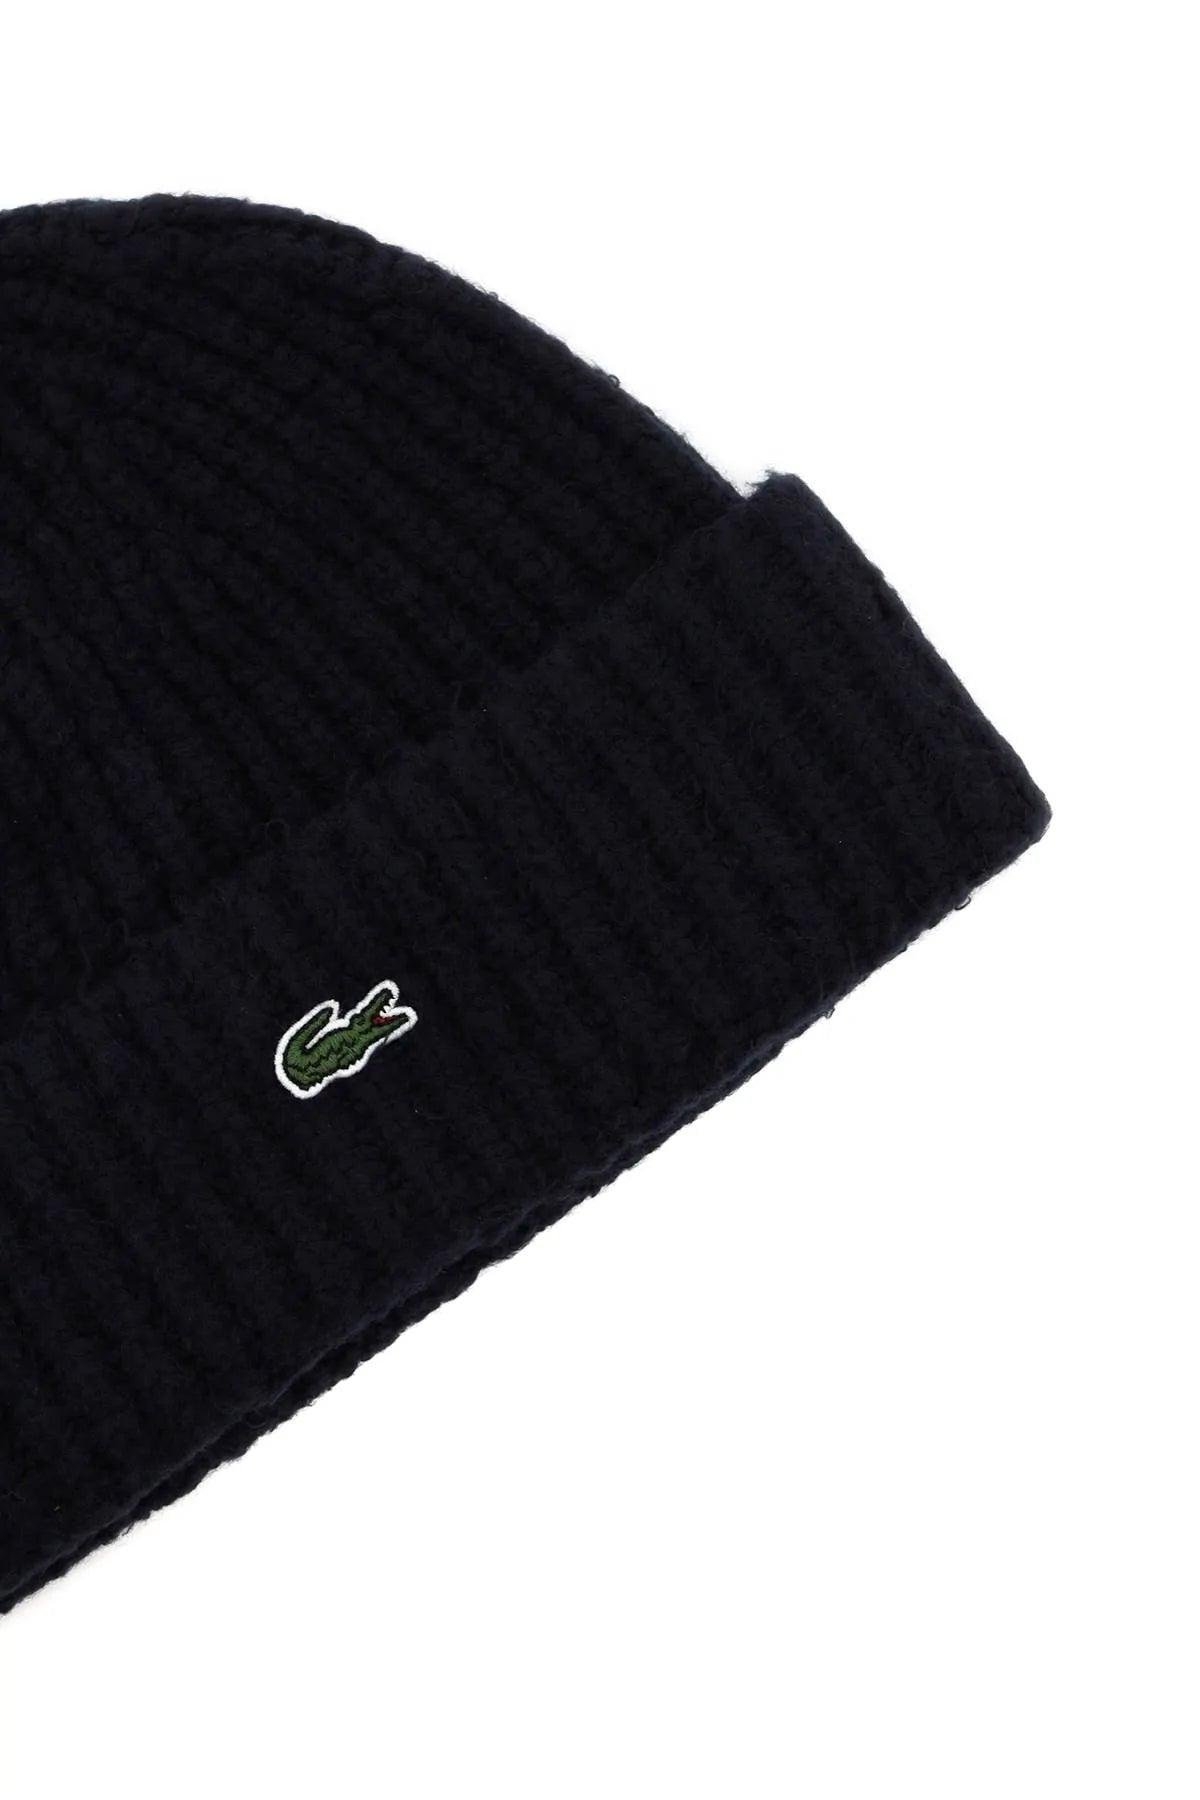 grit Mellem Sæson Lacoste Cotton Blend Beanie Hat in Black | Lyst